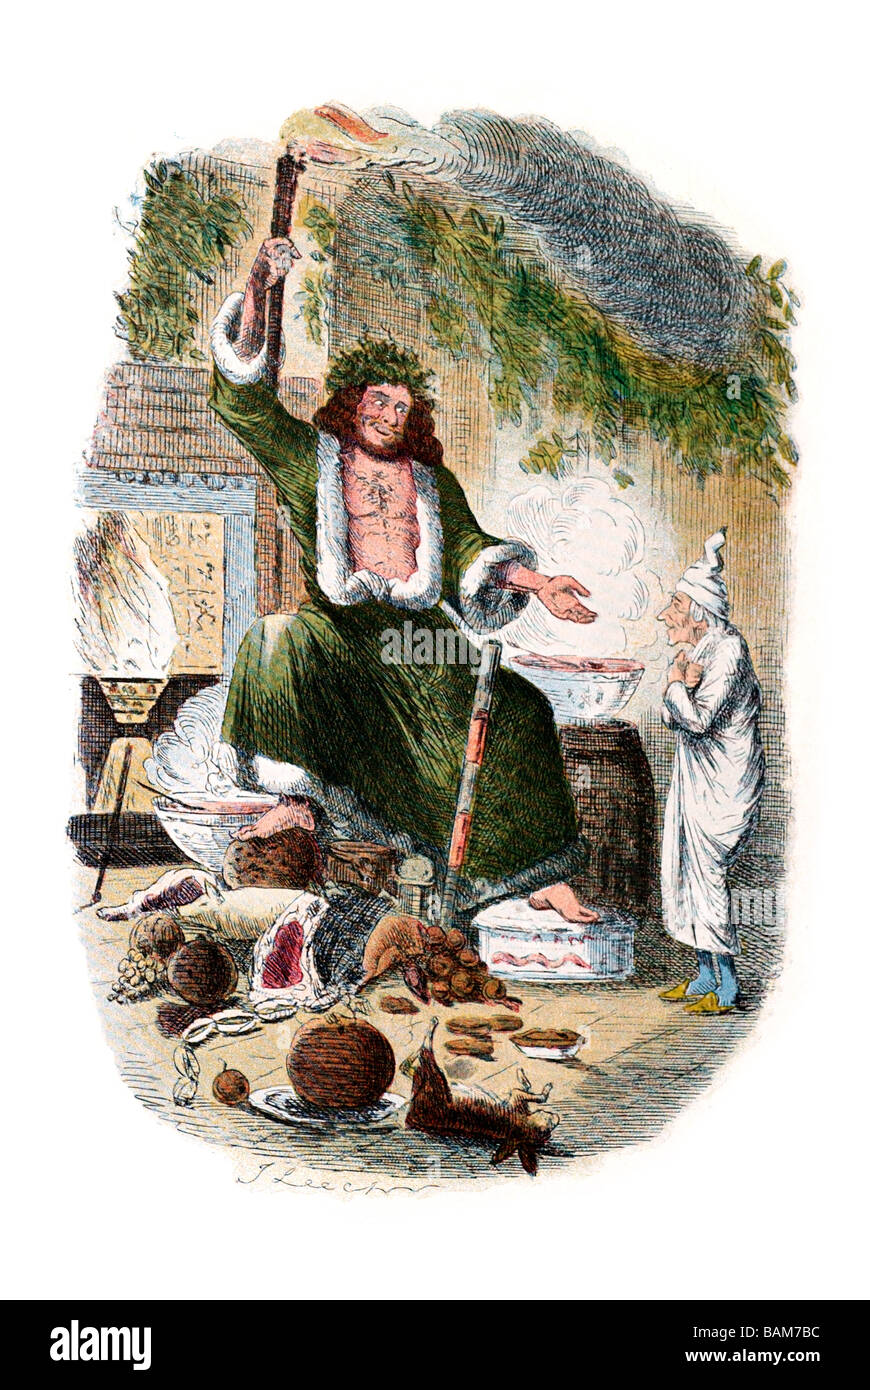 Scrooge s terzo ospite un canto di Natale in prosa, essendo un fantasma racconto di Natale di Charles Dickens Foto Stock